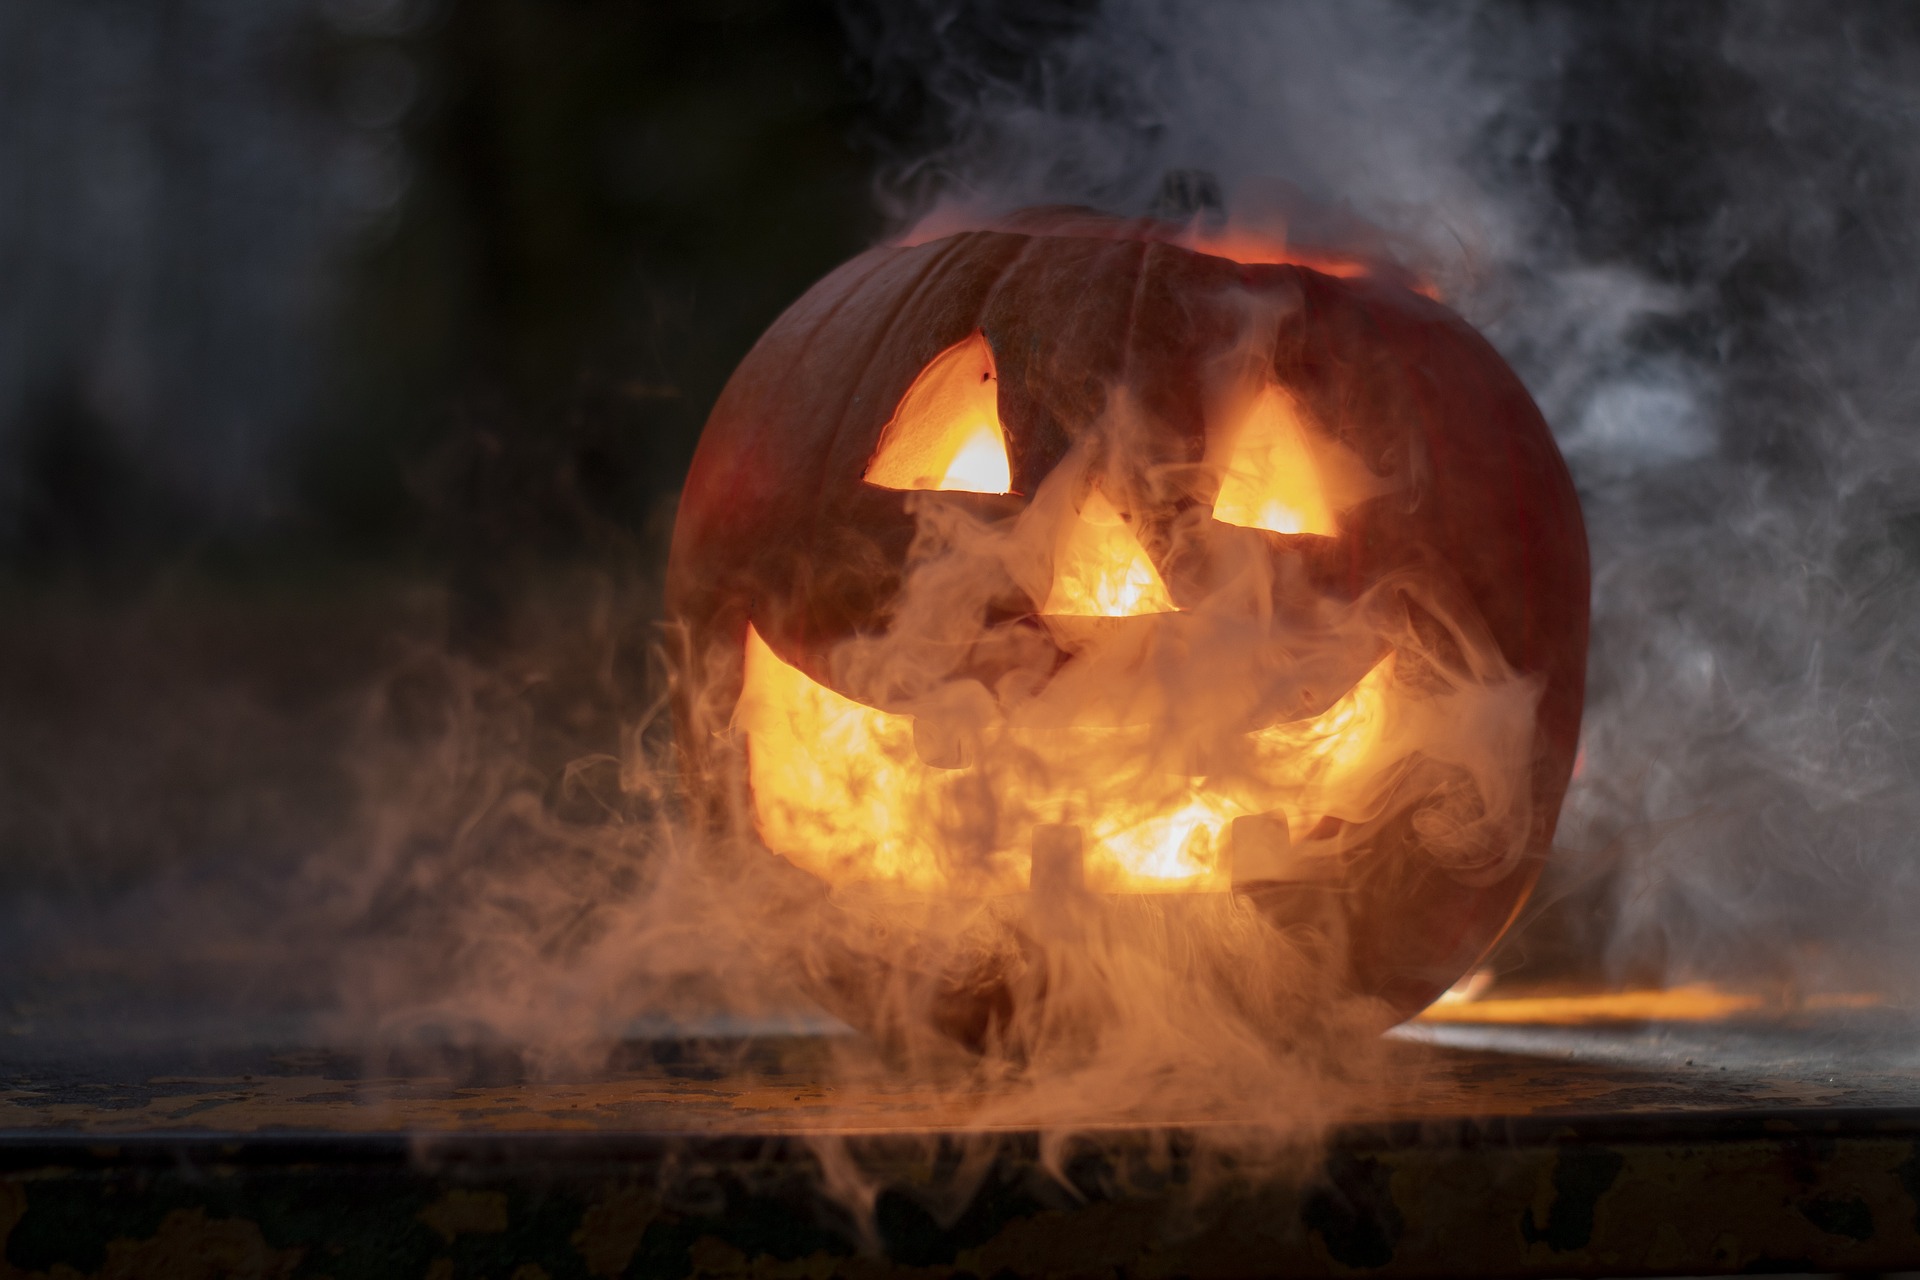 Halloween à Lyon : Quatre idées de sorties pour se faire peur